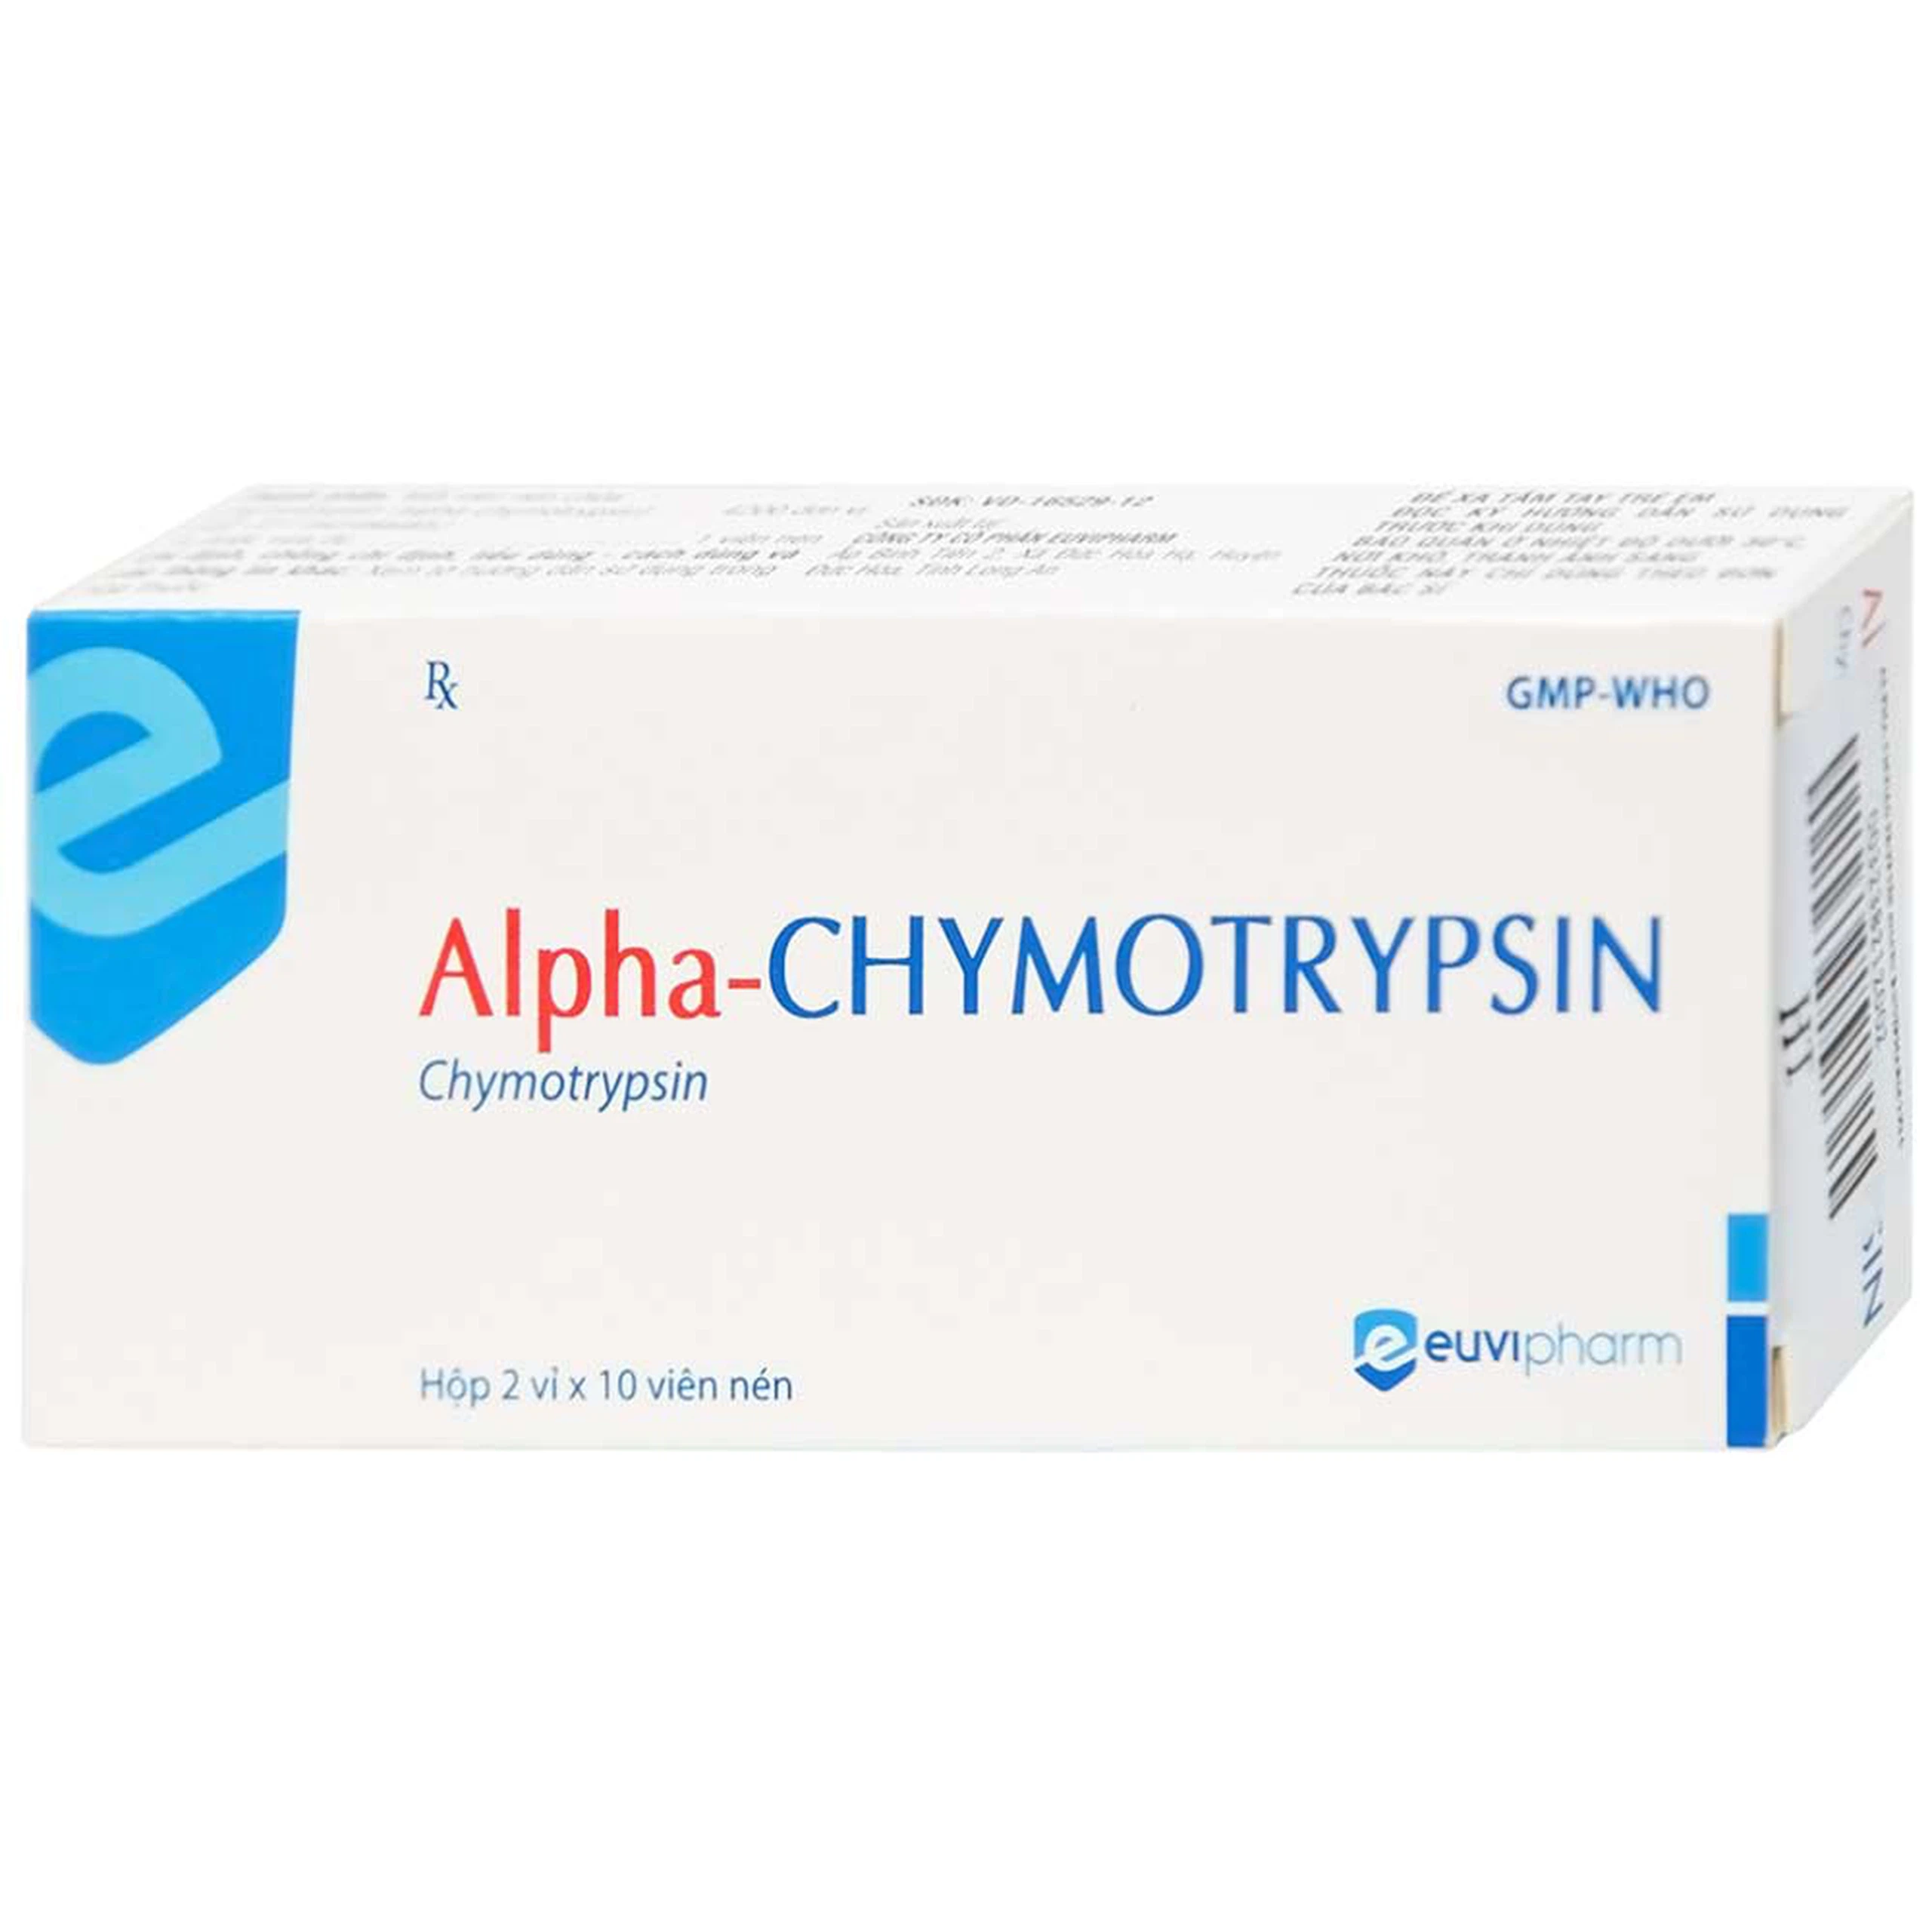 Thuốc Alpha-Chymotrypsin Euvipharm điều trị phù nề sau chấn thương, phẩu thuật, bỏng (2 vỉ x 10 viên)